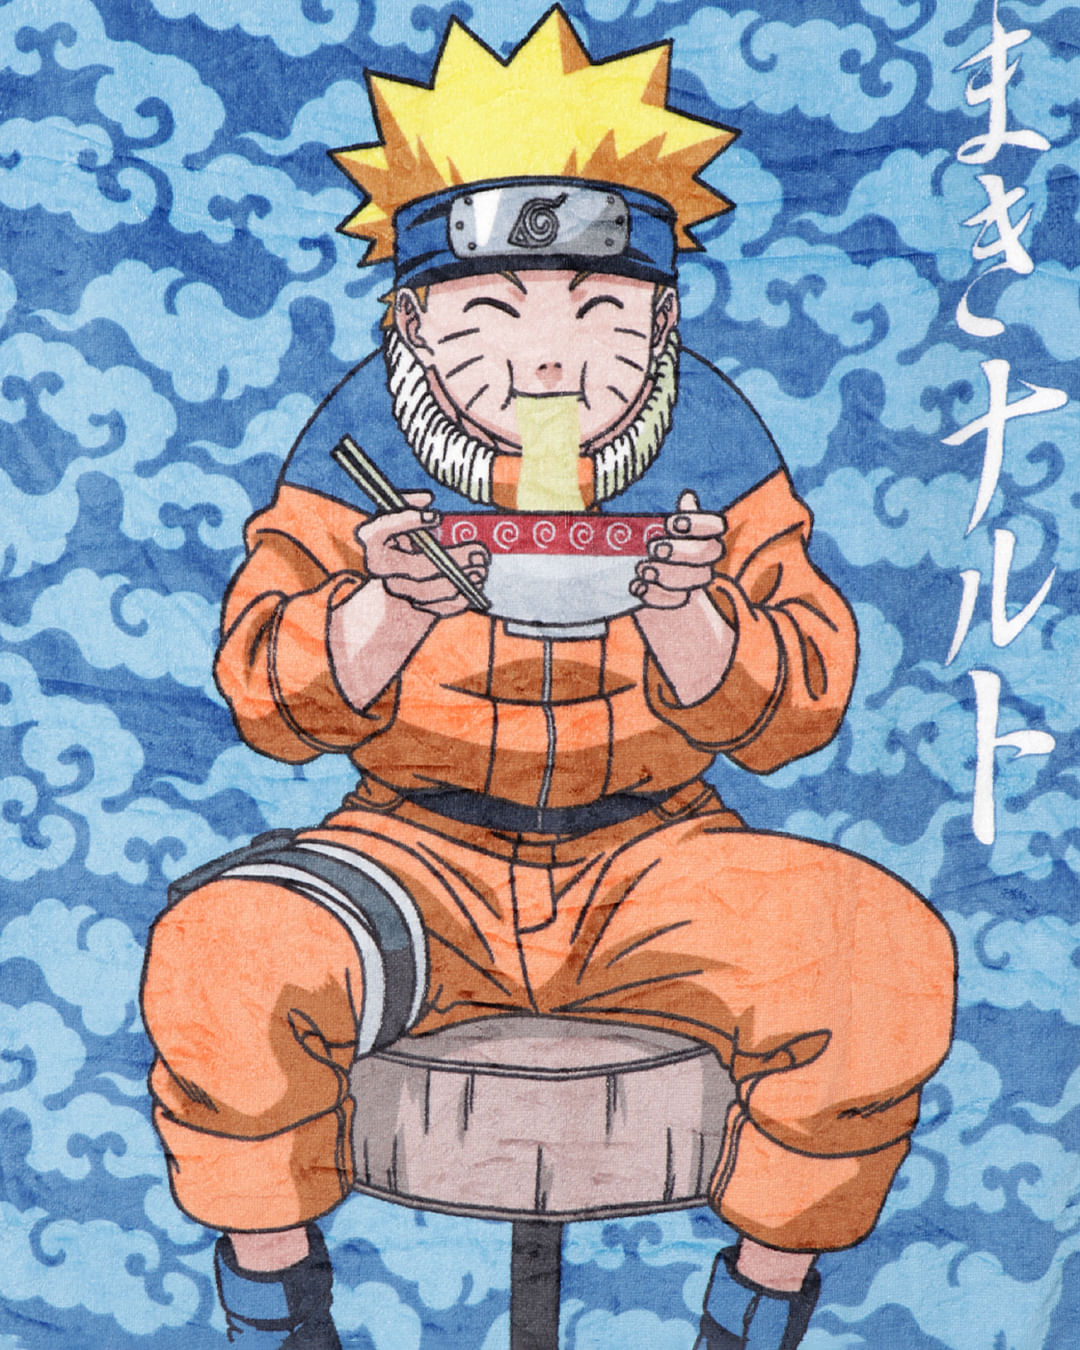 Toalha de Banho infantil Boruto Naruto - Ótima Qualidade